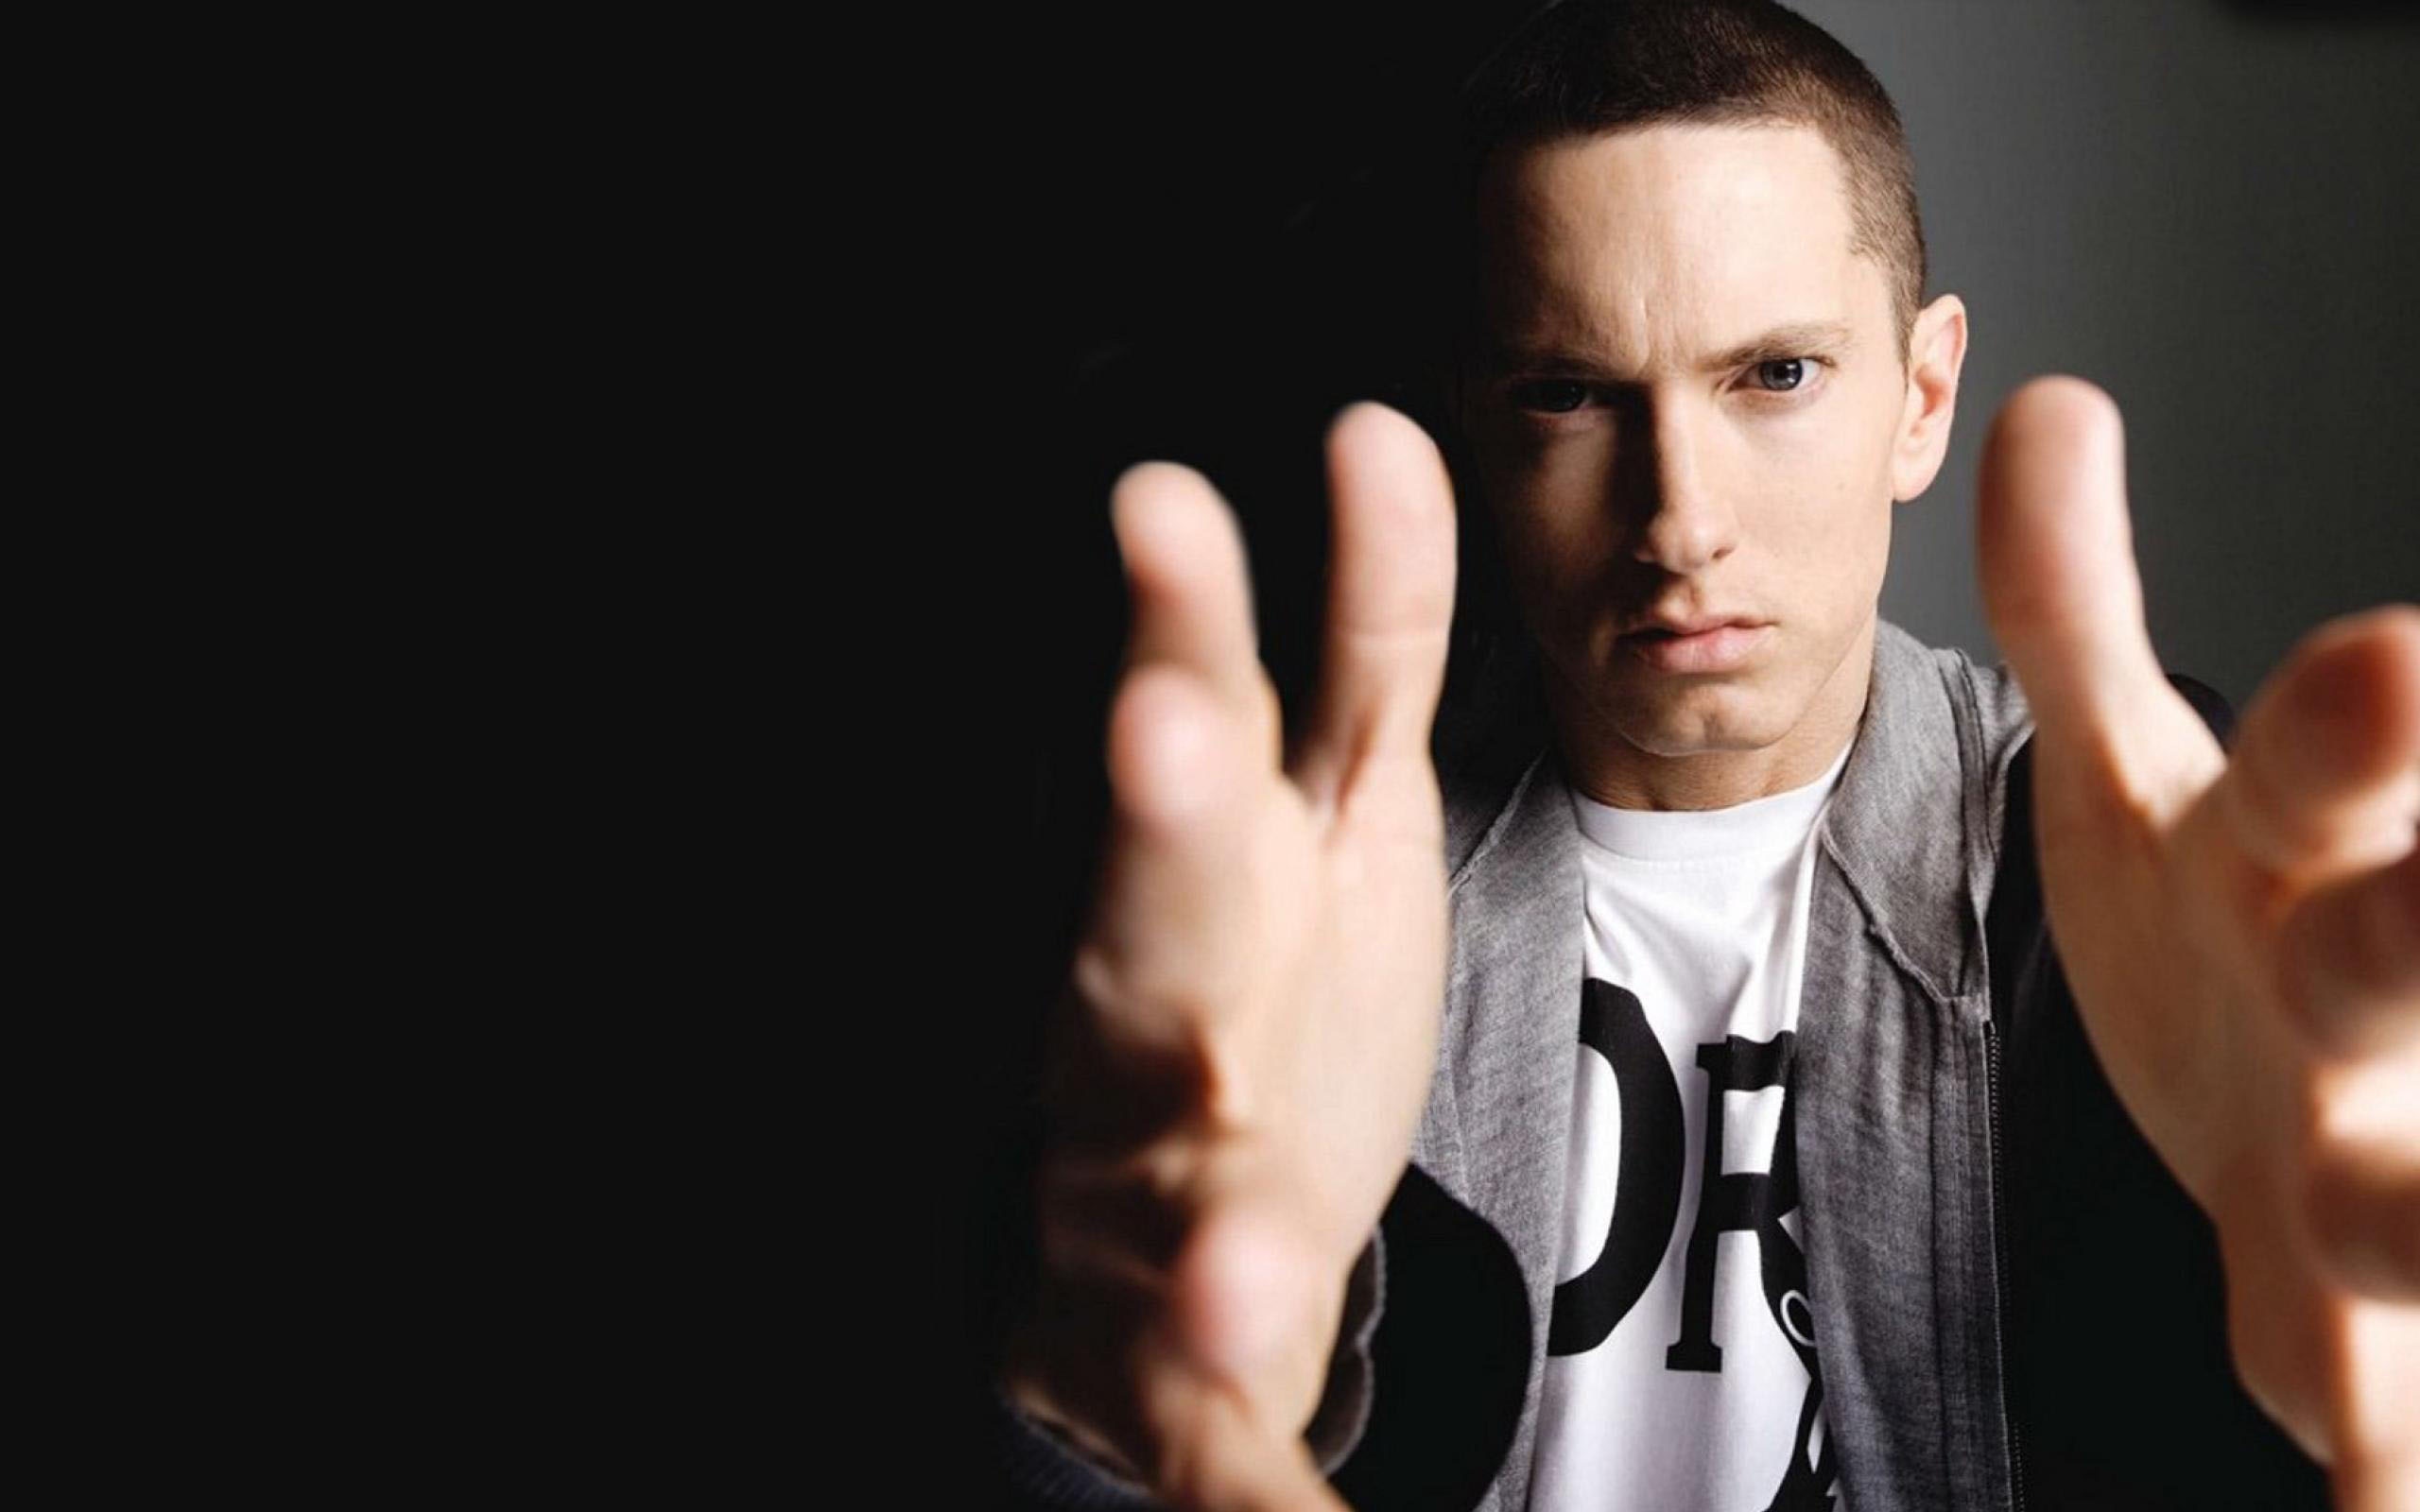 Eminem Wallpapers - Eminem Duvar Kağıtları - TrendForum.Net - Genel ...